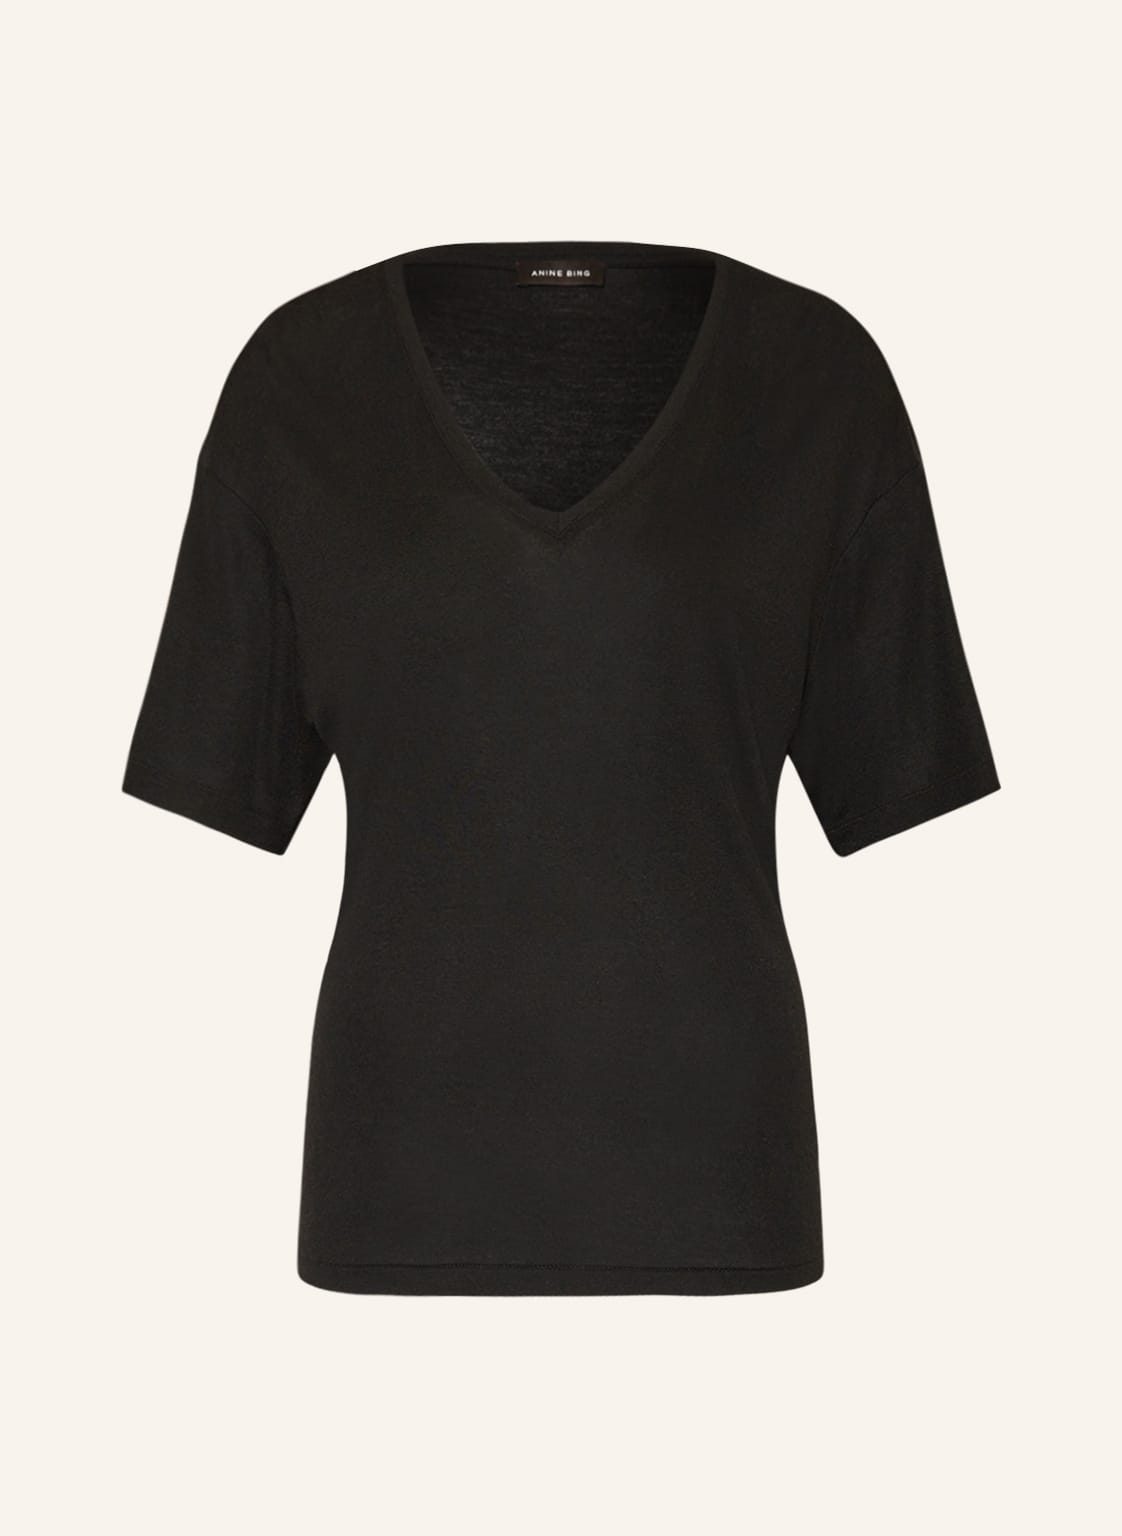 Anine Bing T-Shirt Vale schwarz von ANINE BING